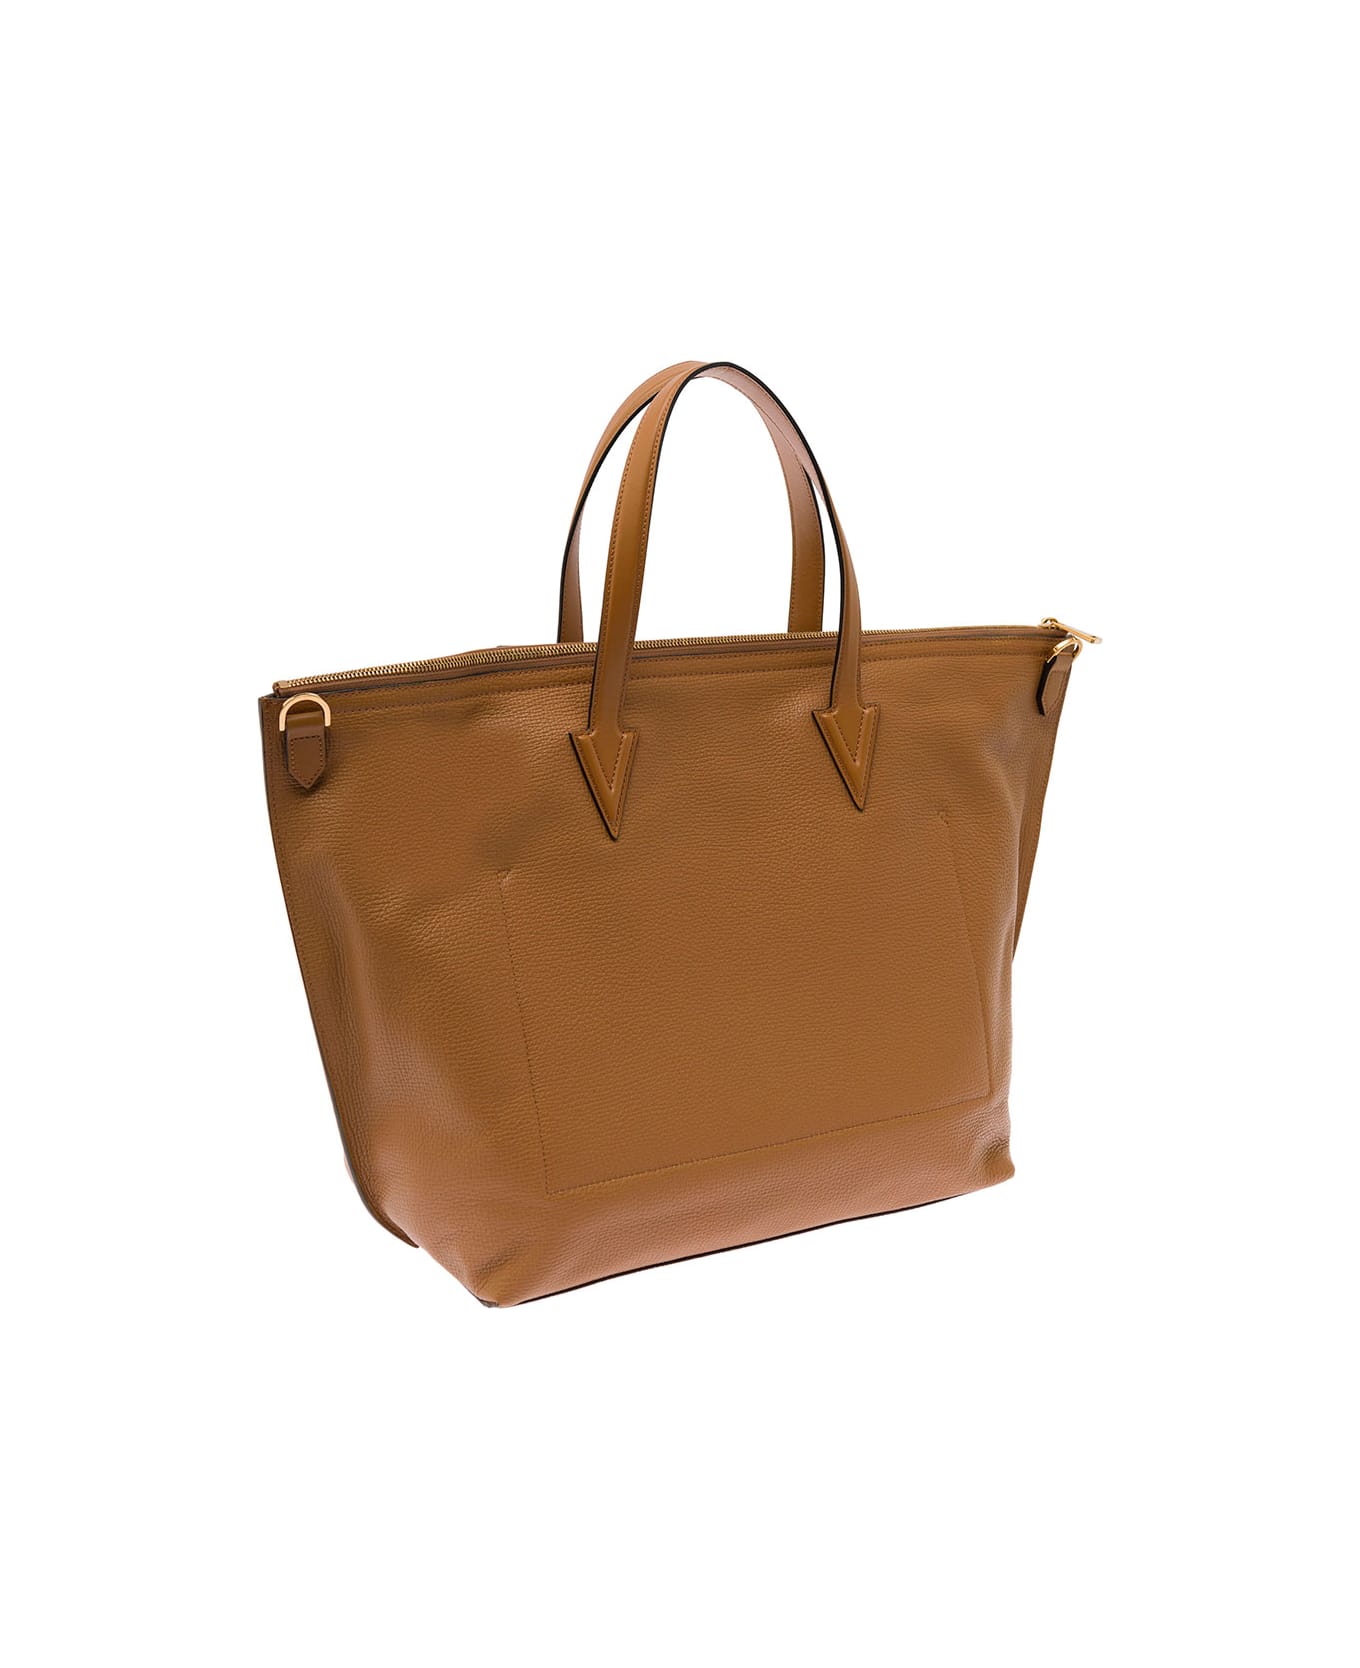 Versace Tote Bag Pelle - Brown